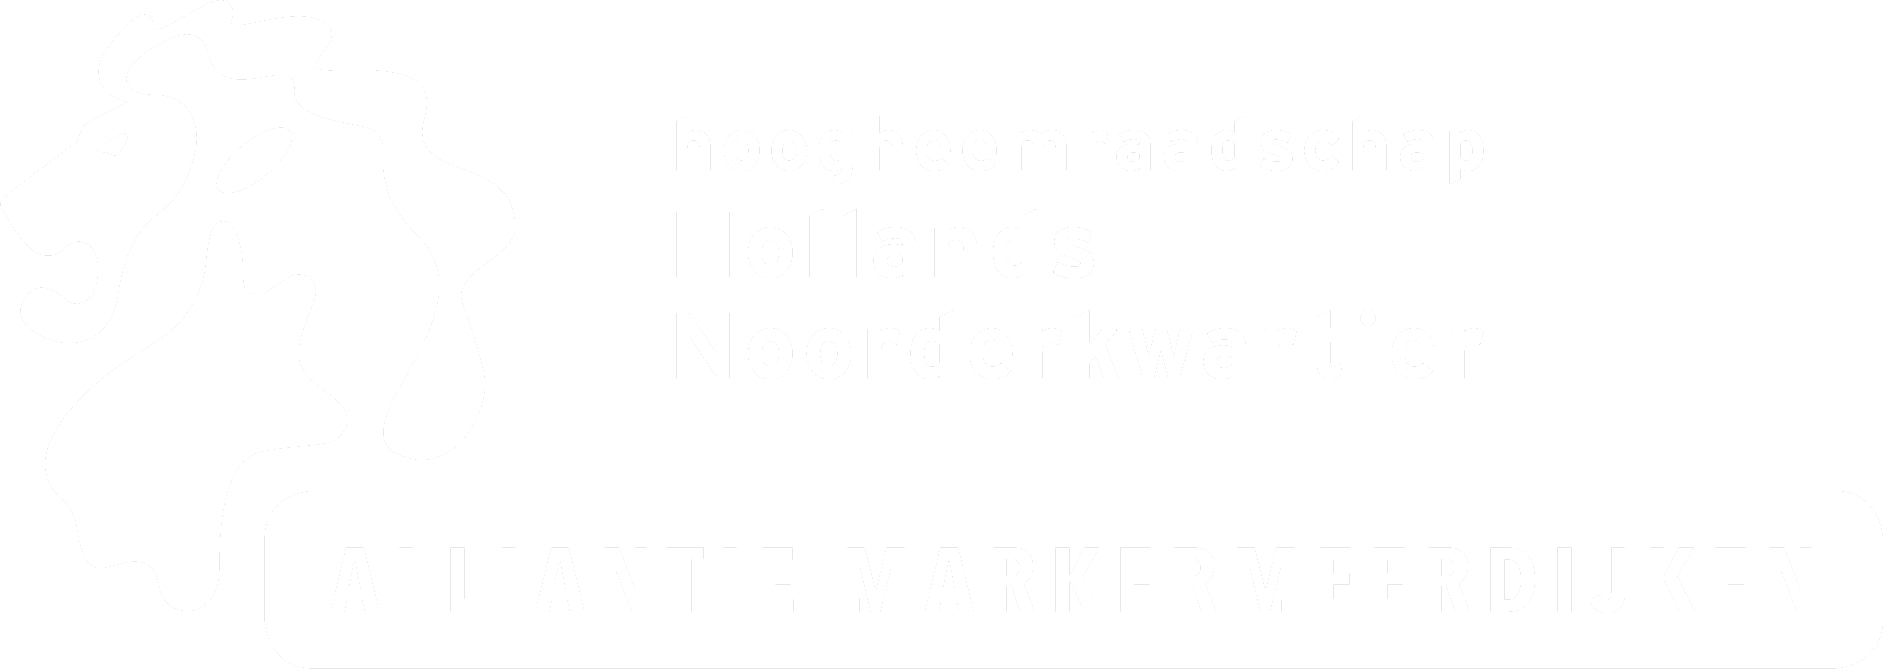 Hoogheemraadschap Hollands Noorderkwartier - Alliantie Markermeerdijken